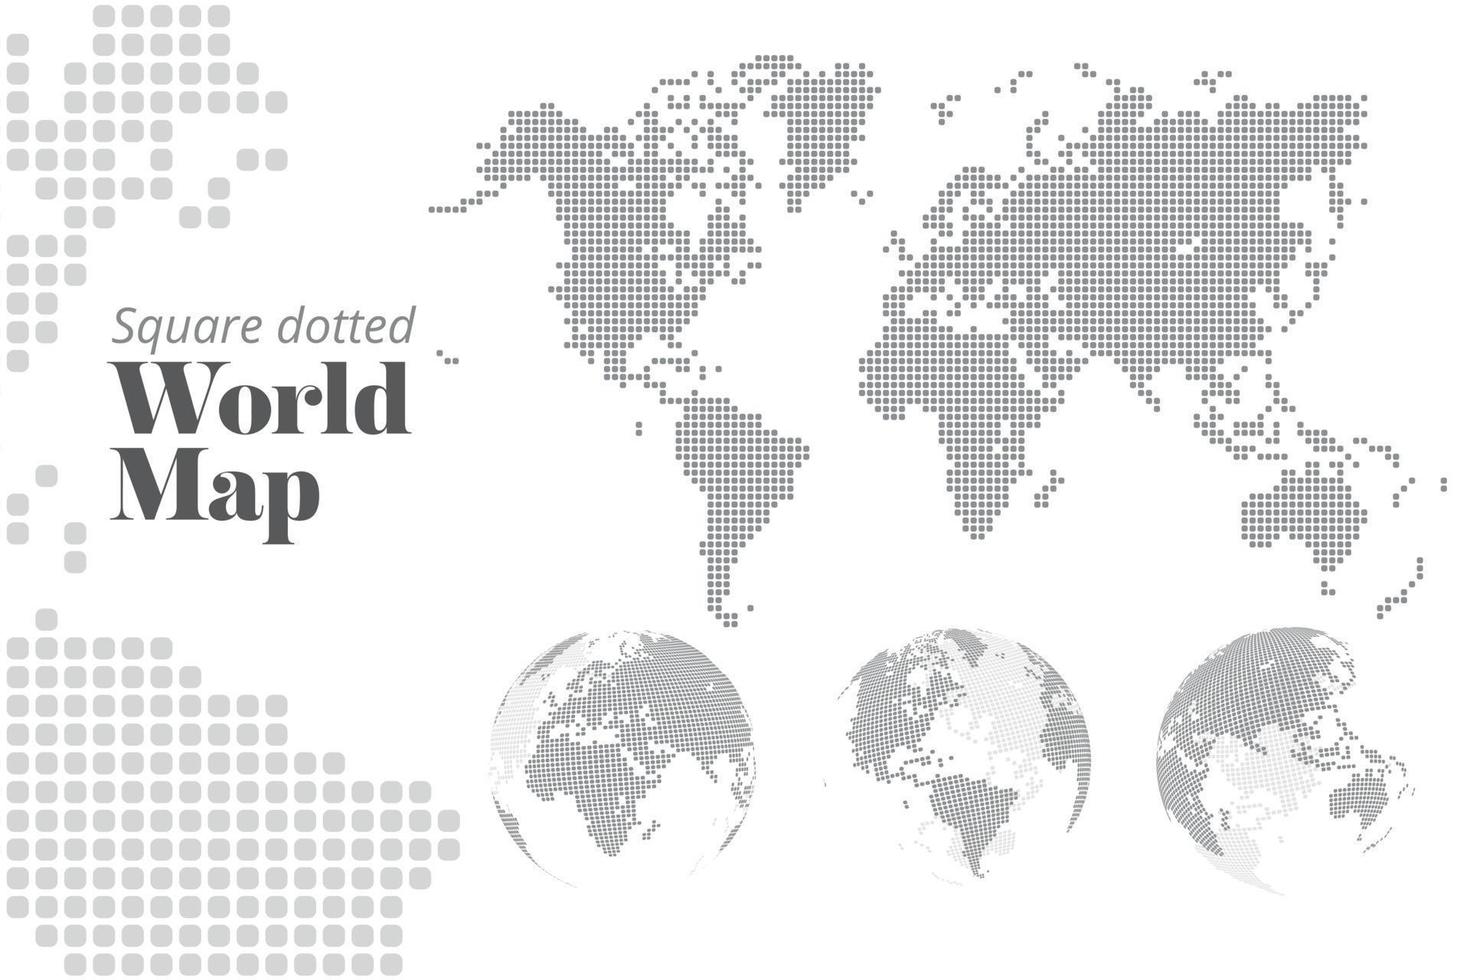 mapa del mundo con puntos cuadrados y globos terráqueos que muestran todos los continentes. plantilla de ilustración vectorial para diseño web, informes anuales, infografías, presentación de negocios, marketing, viajes y turismo. vector